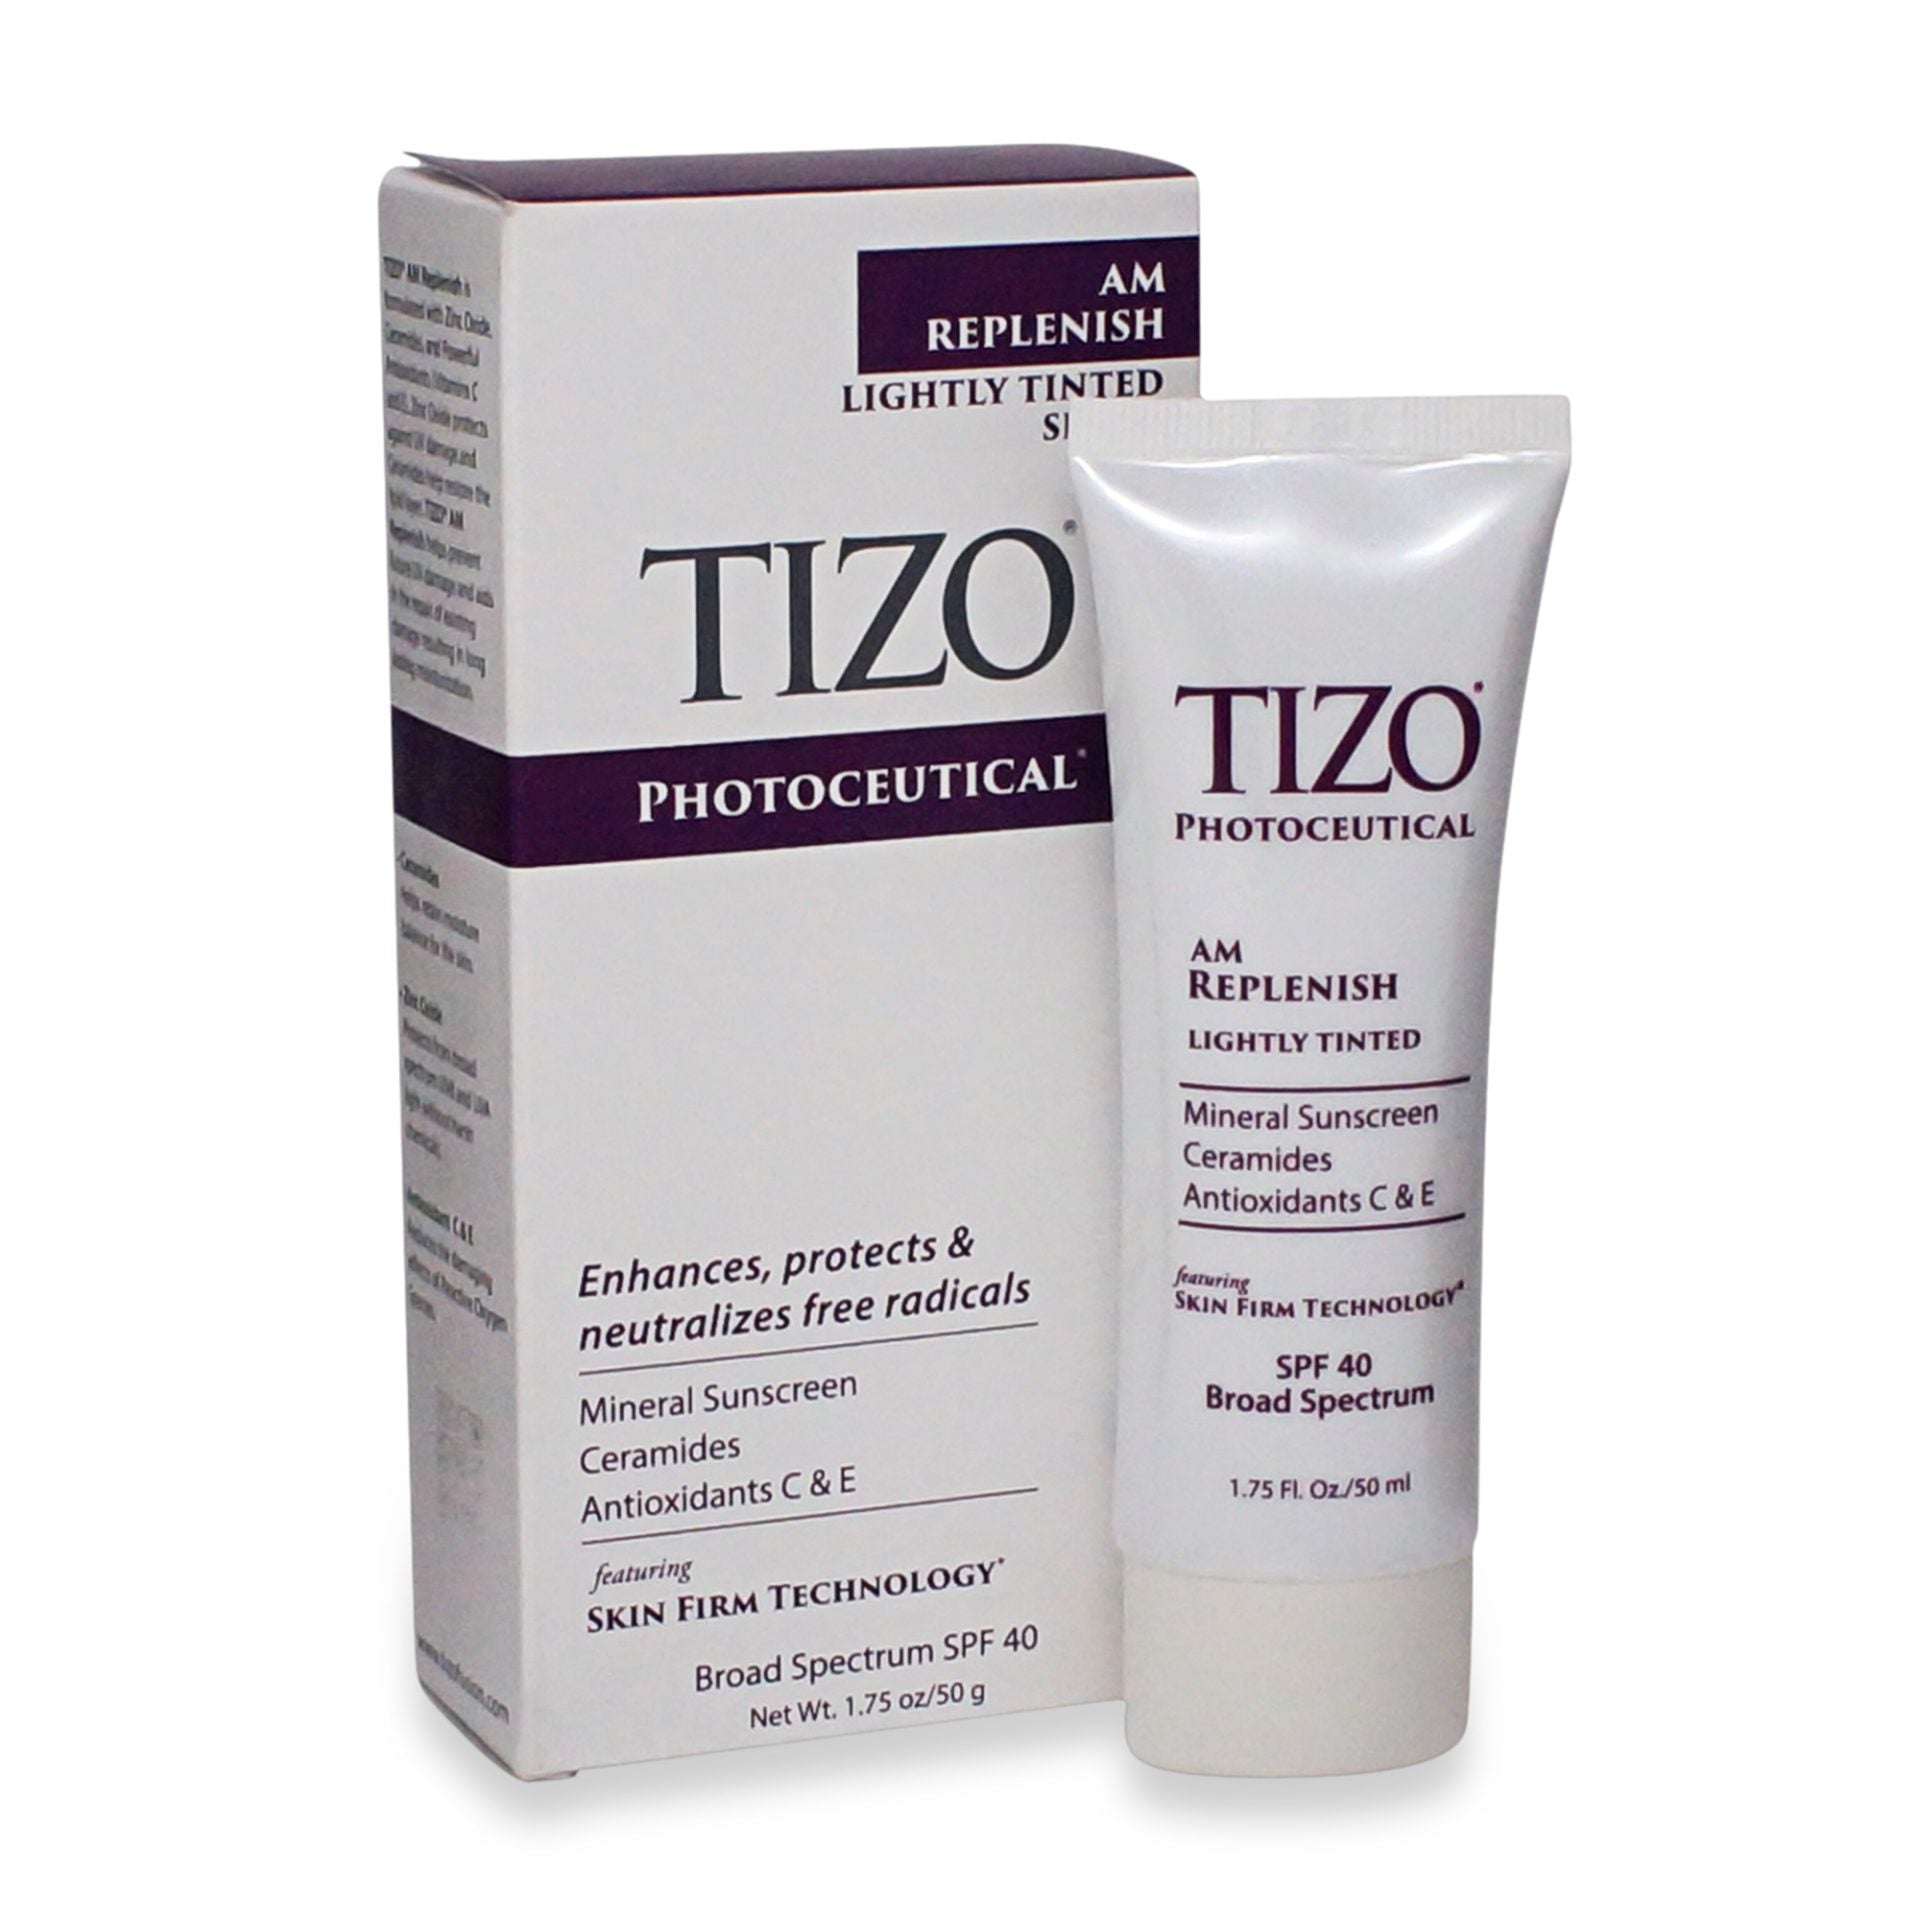 Tizo-AM-Replenish-SPF-40-Photoceutical-Lightly-Tinted-Tizo-productos dermocometicos para rutina de skincare cosmeticos belleza salud de la piel acne arrugas manchas belihebe by doctora luisa obregon barranquilla colombia 